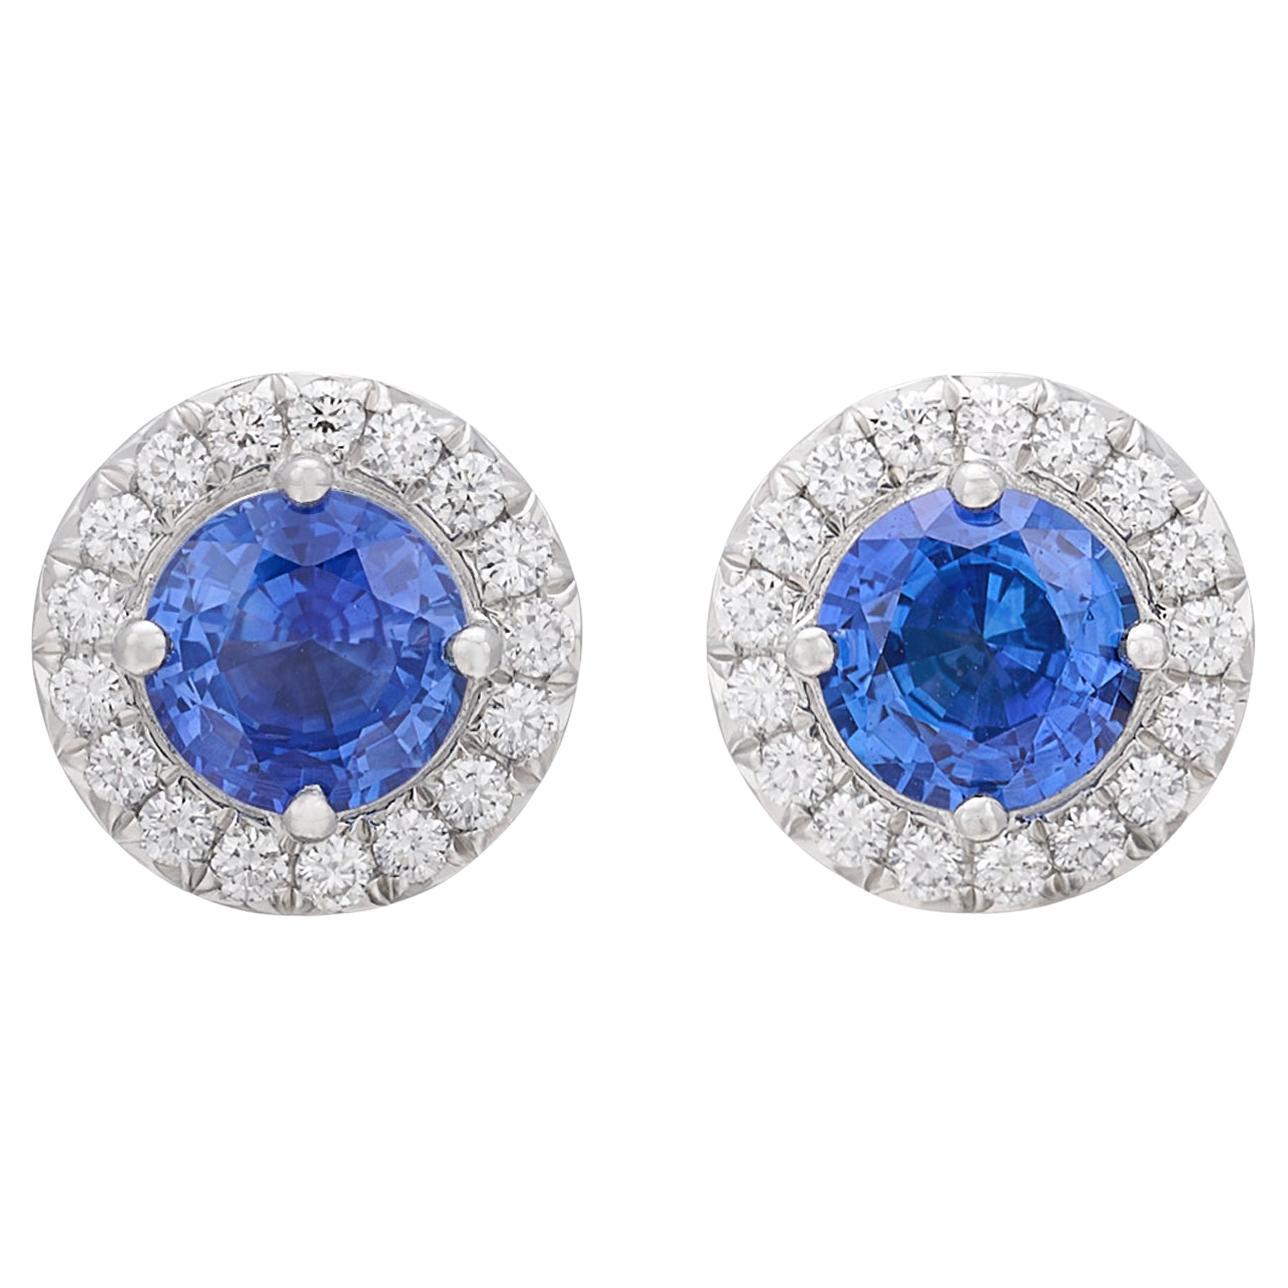 Sapphire & Diamond "Solete" Earrings by Tiffany & Co.